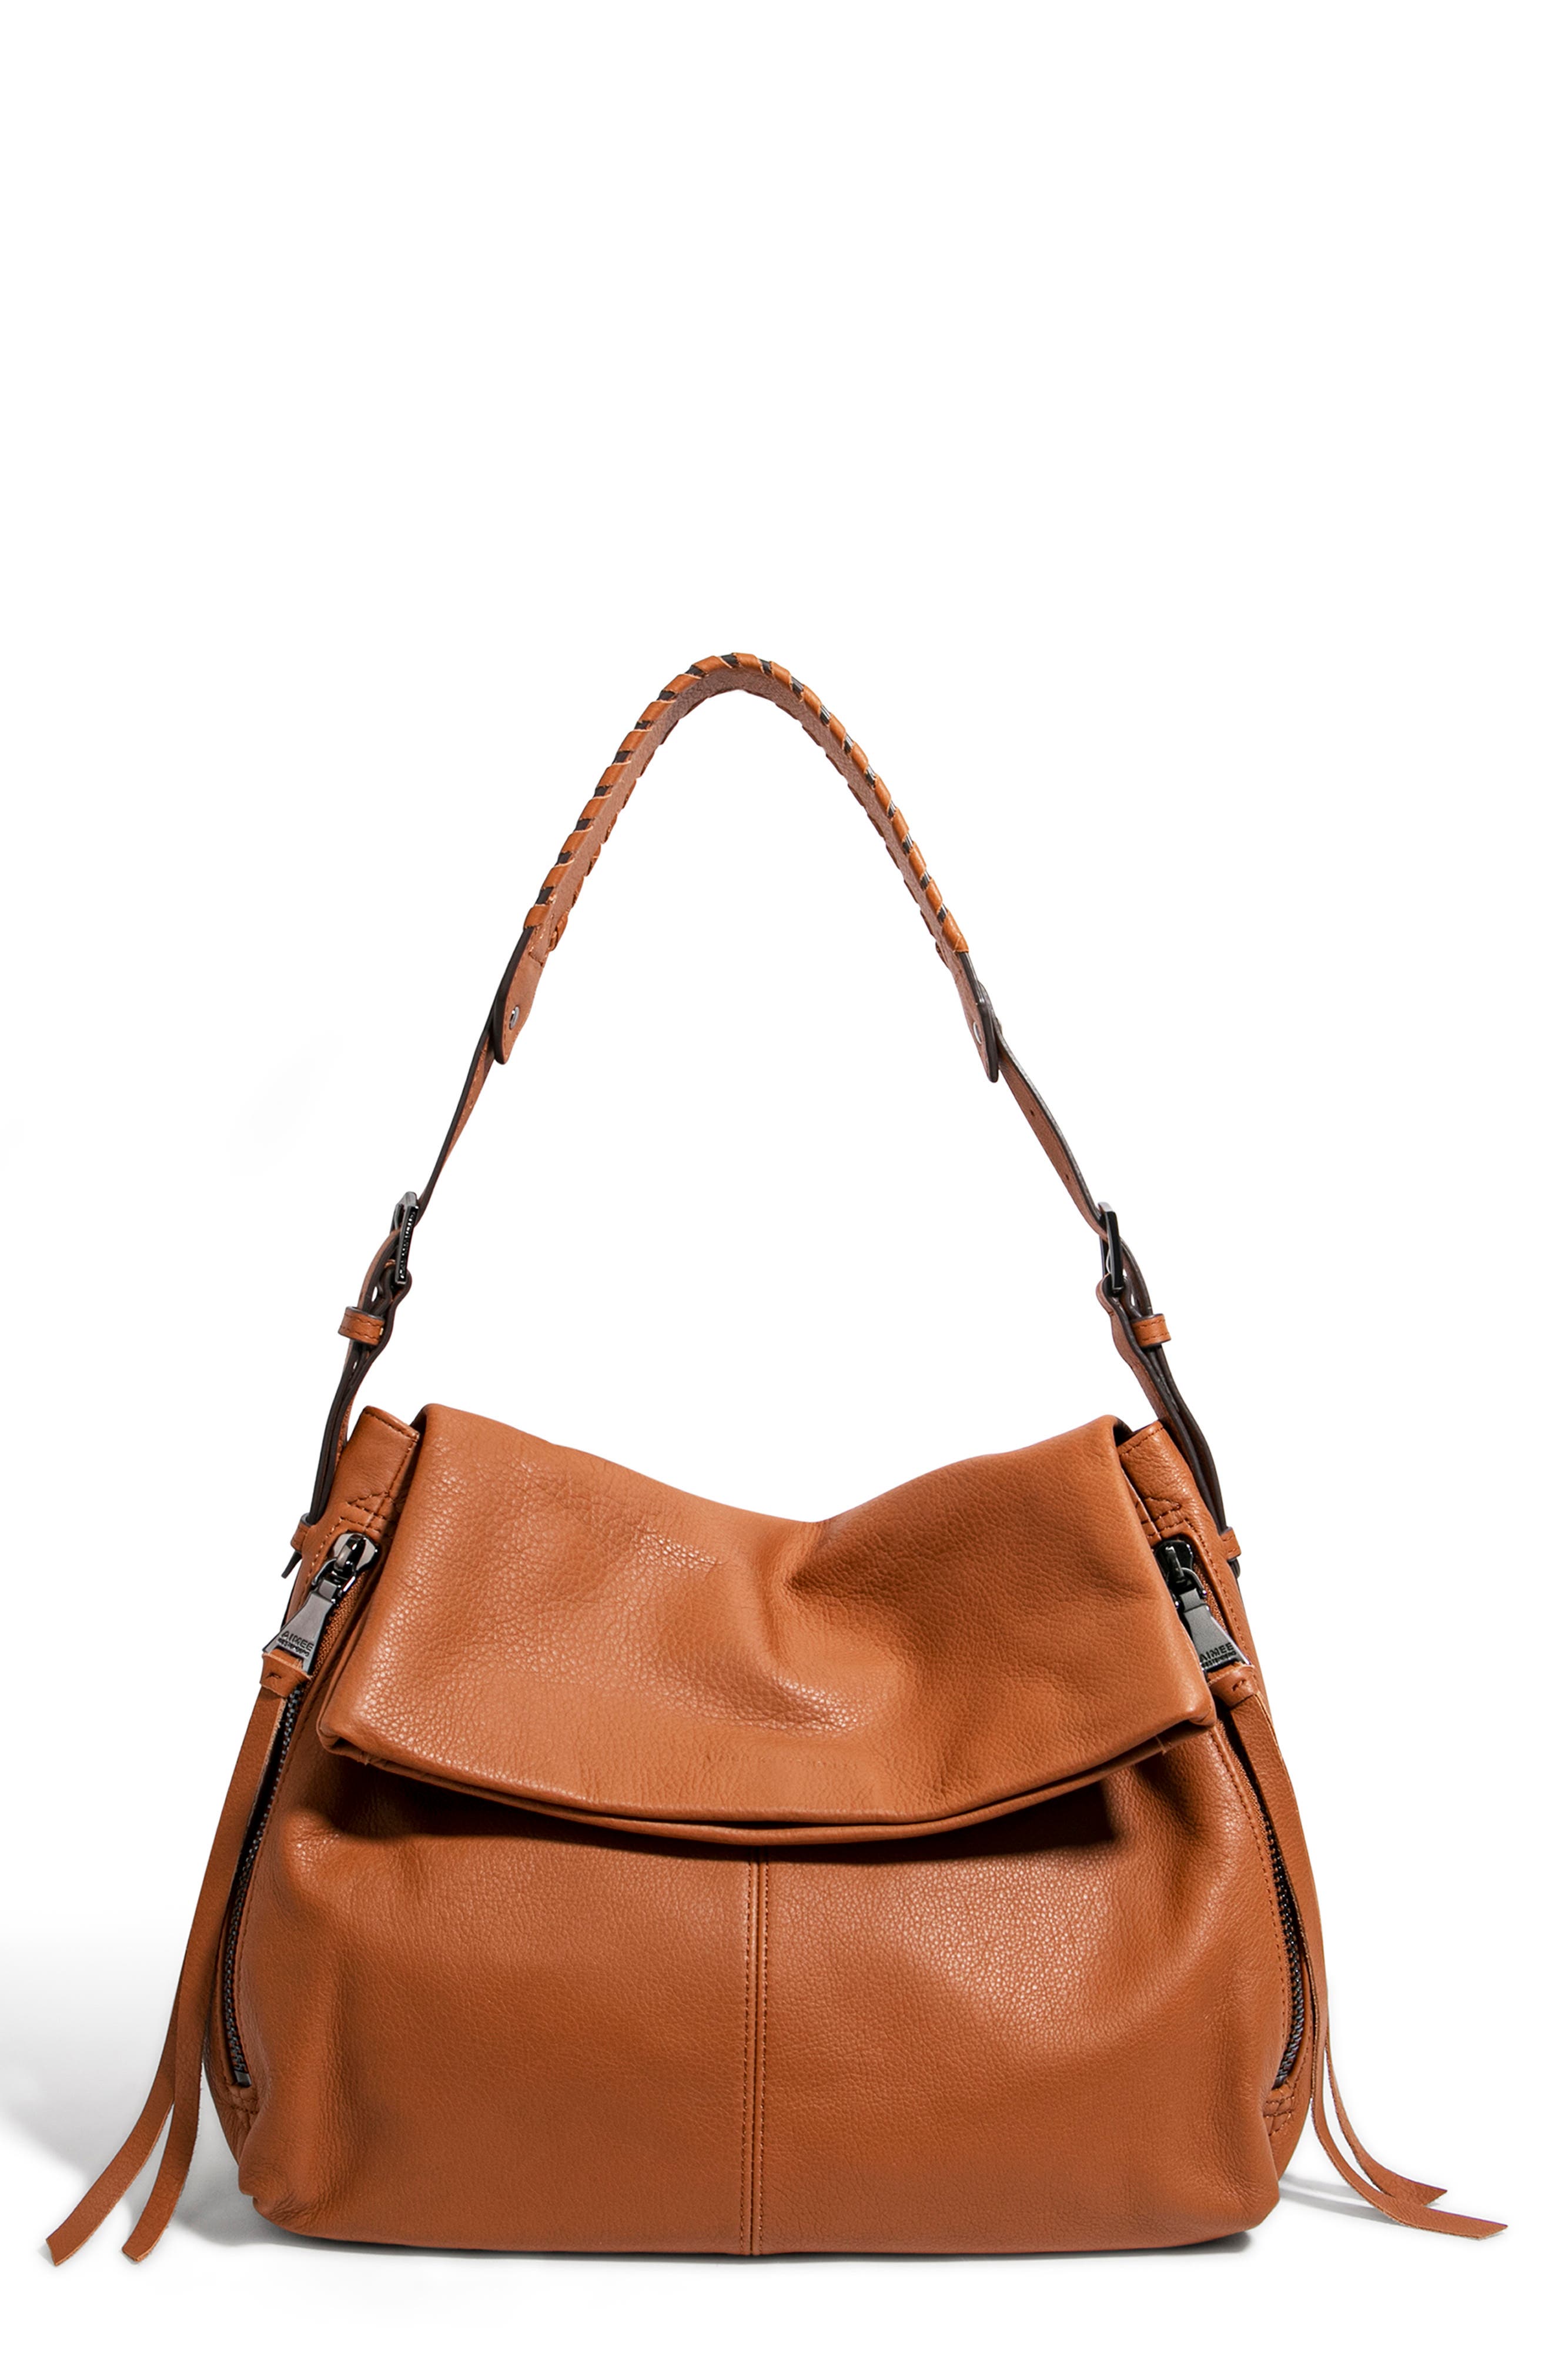 Aimee Kestenberg Penelope Leather Hobo Bag In Chestnut